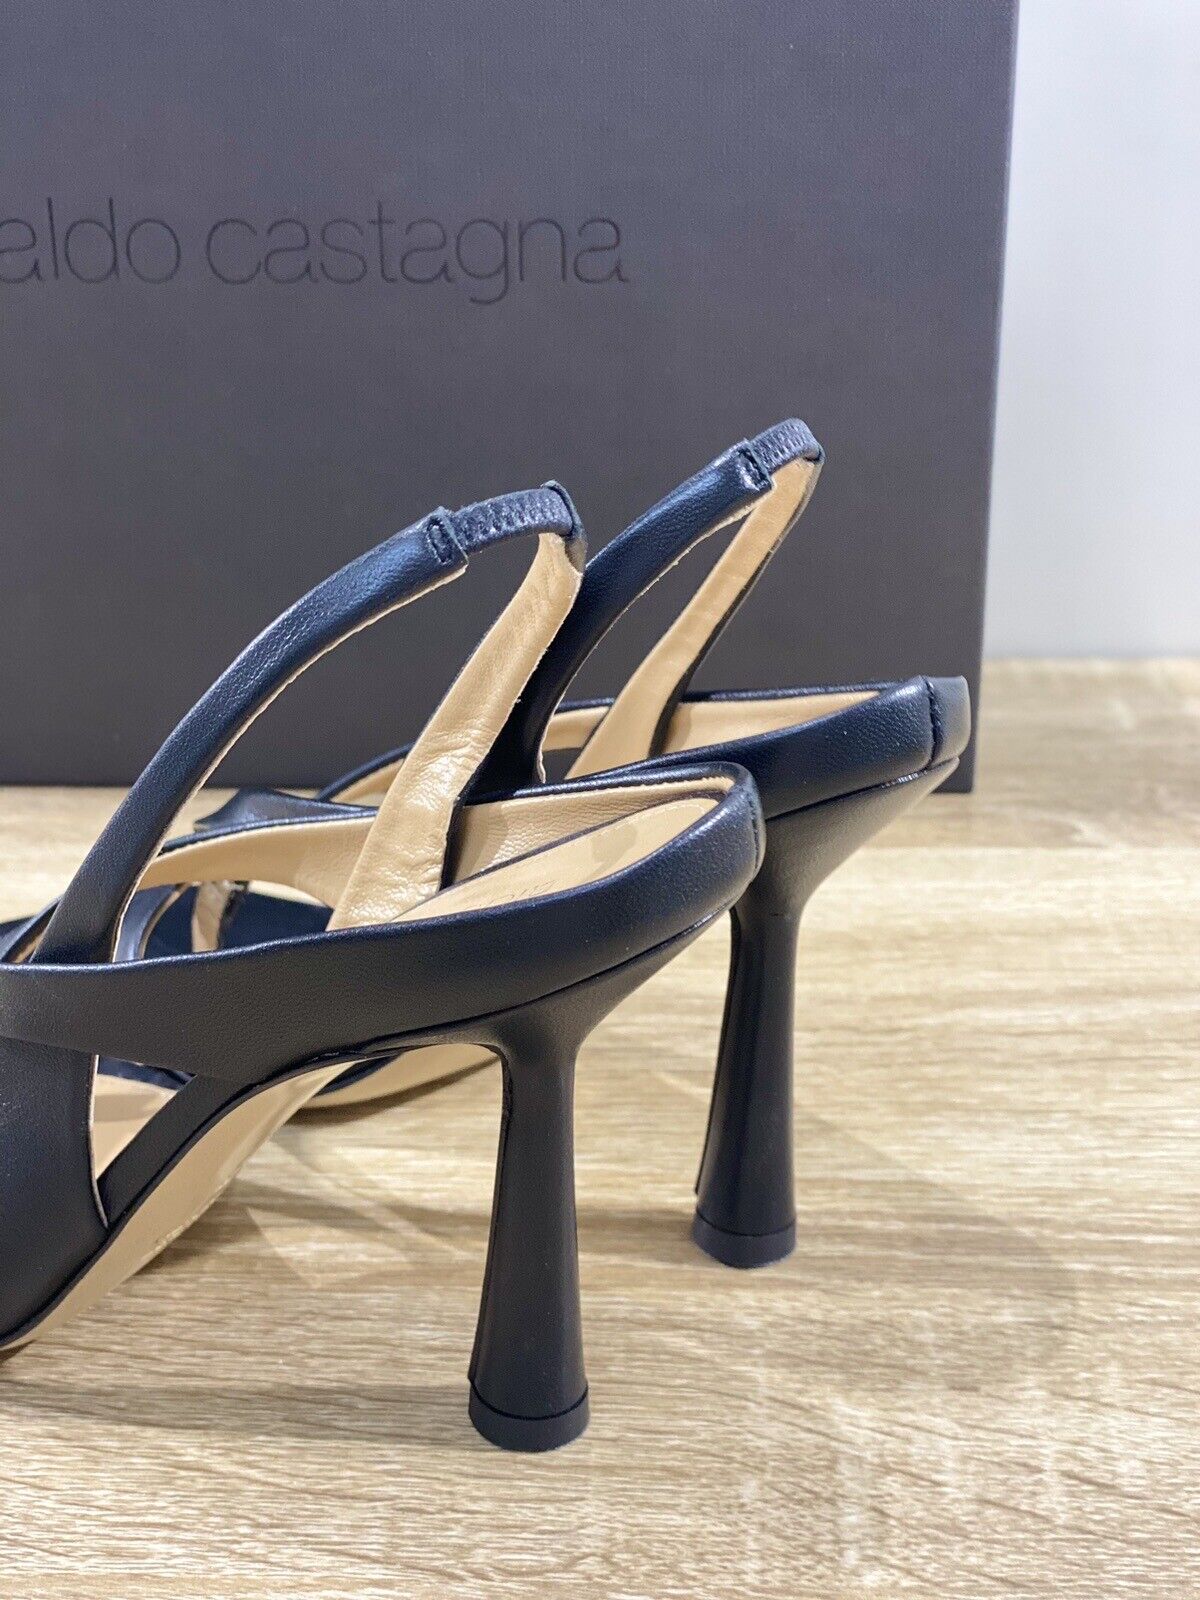 Aldo Castagna Sandalo Donna Lea In Pelle Nero Con Tacco Luxury Sandal 38